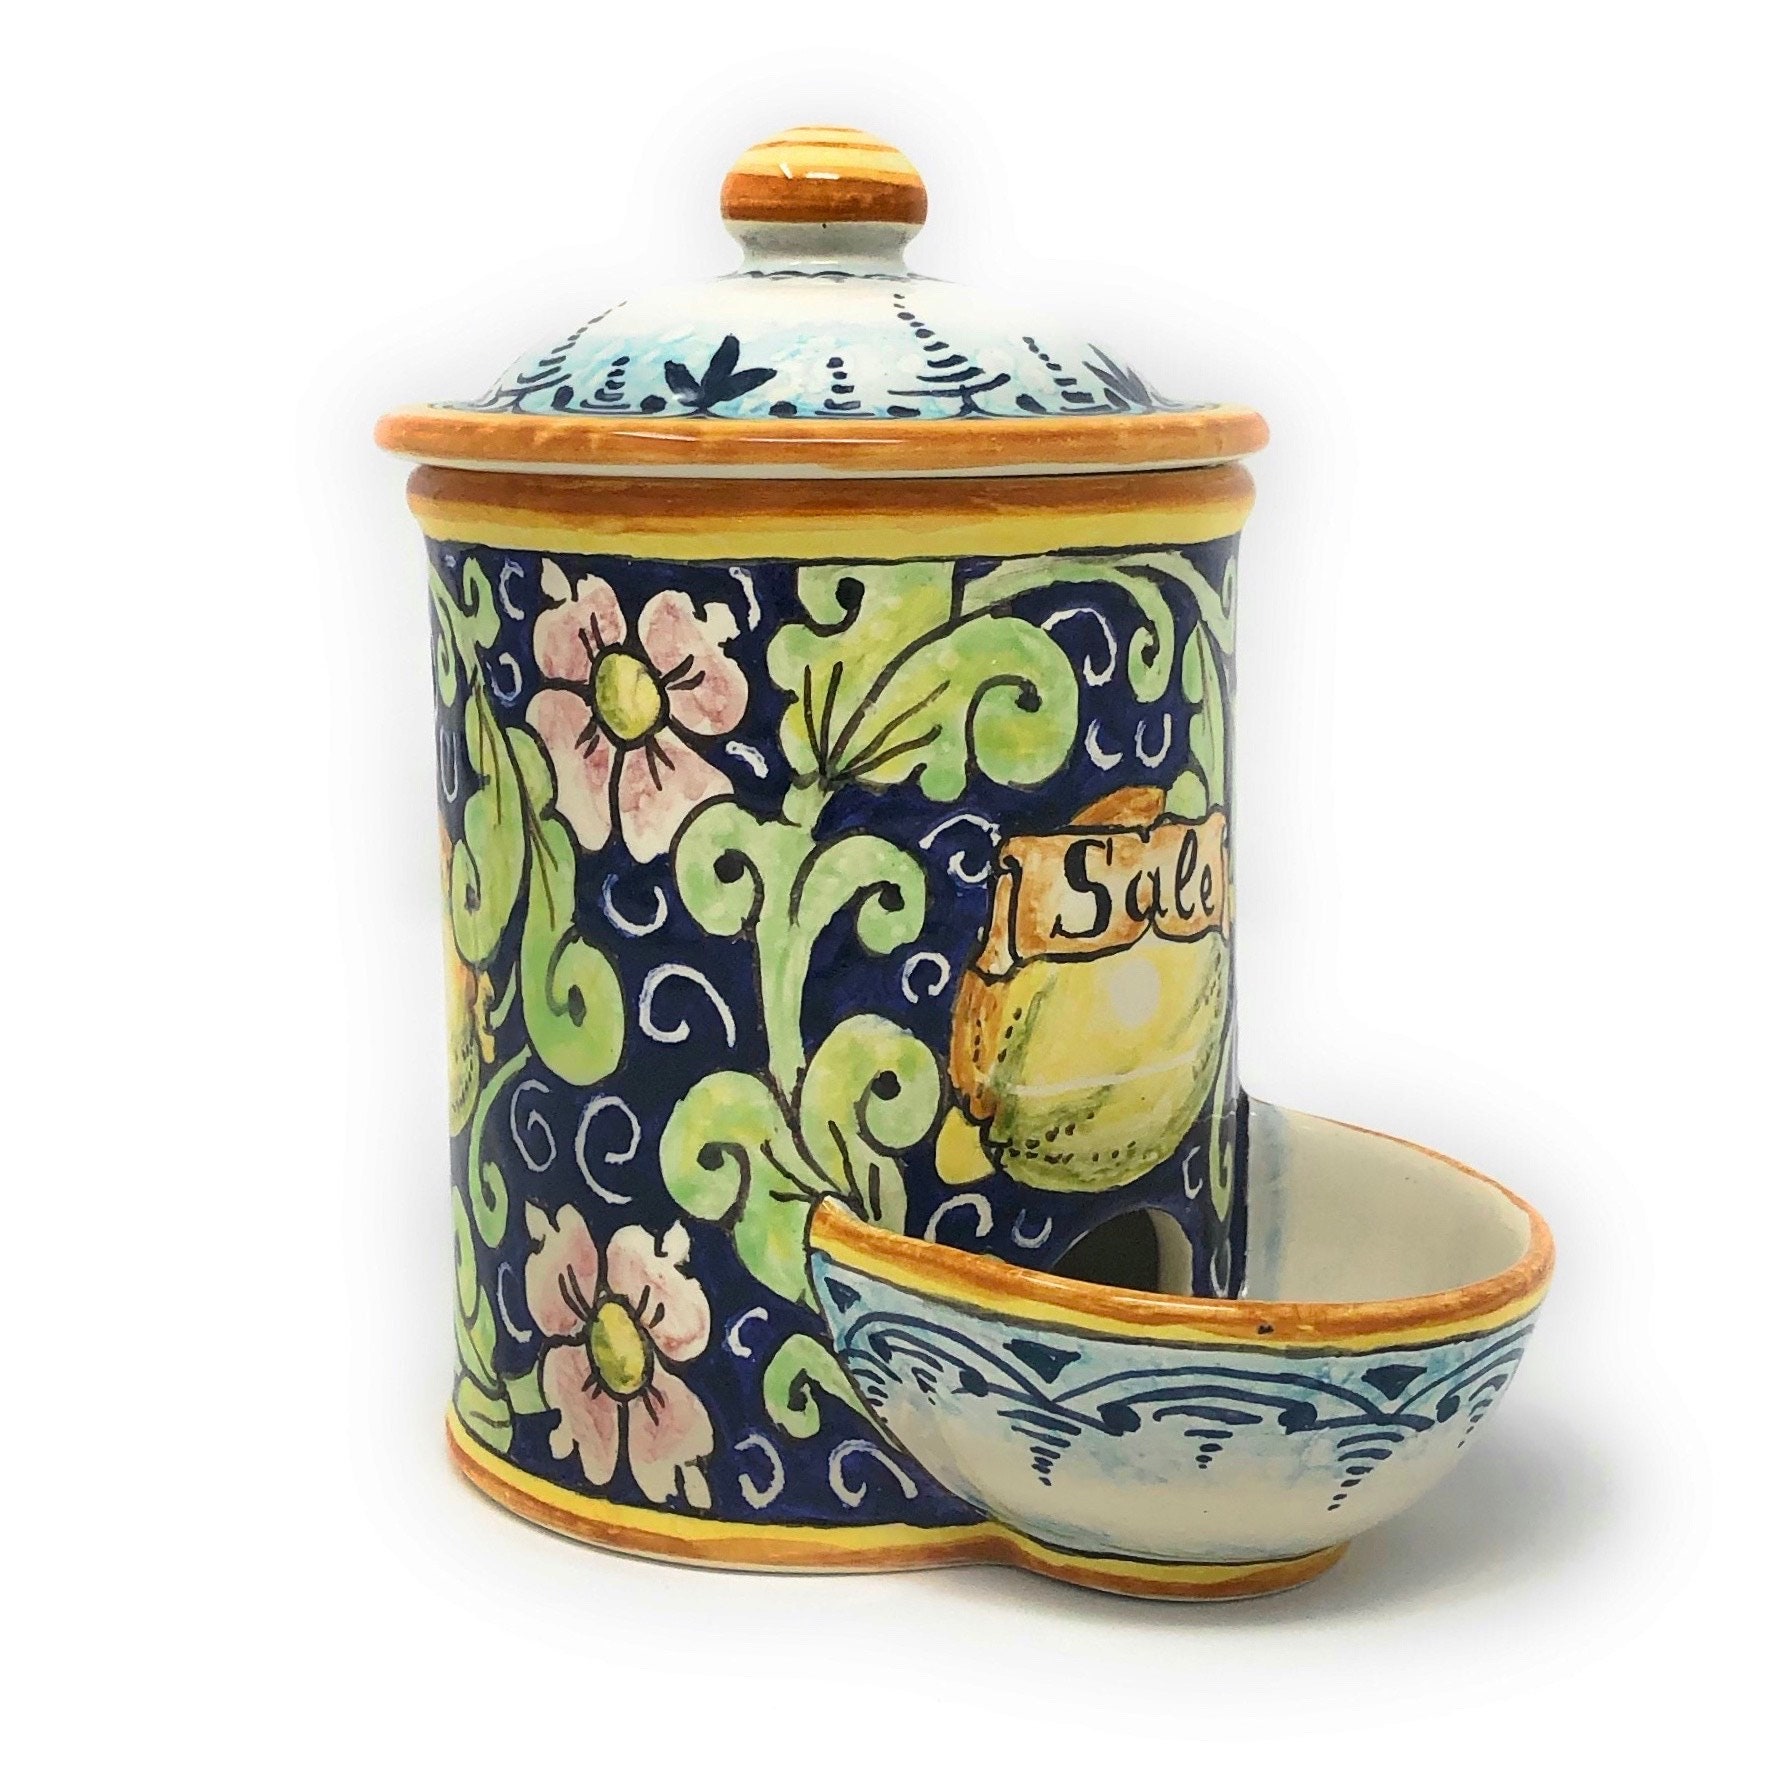 7 idées de Gratte ail  poterie, ceramique, art céramique